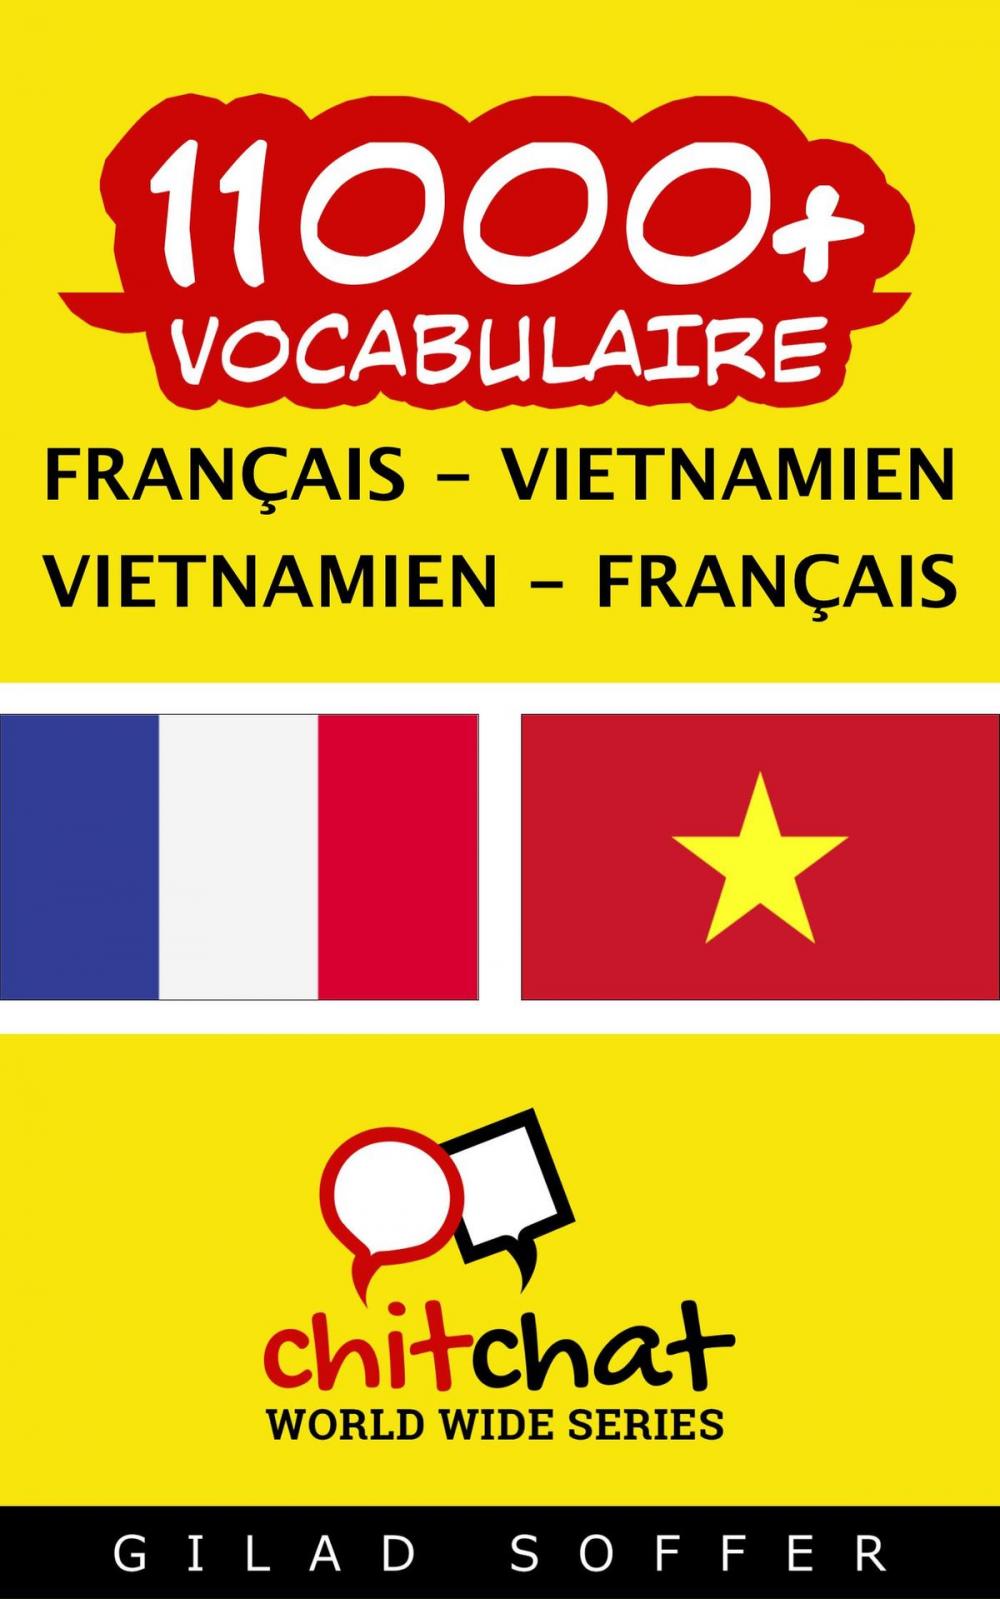 Big bigCover of 11000+ vocabulaire Français - Vietnamien